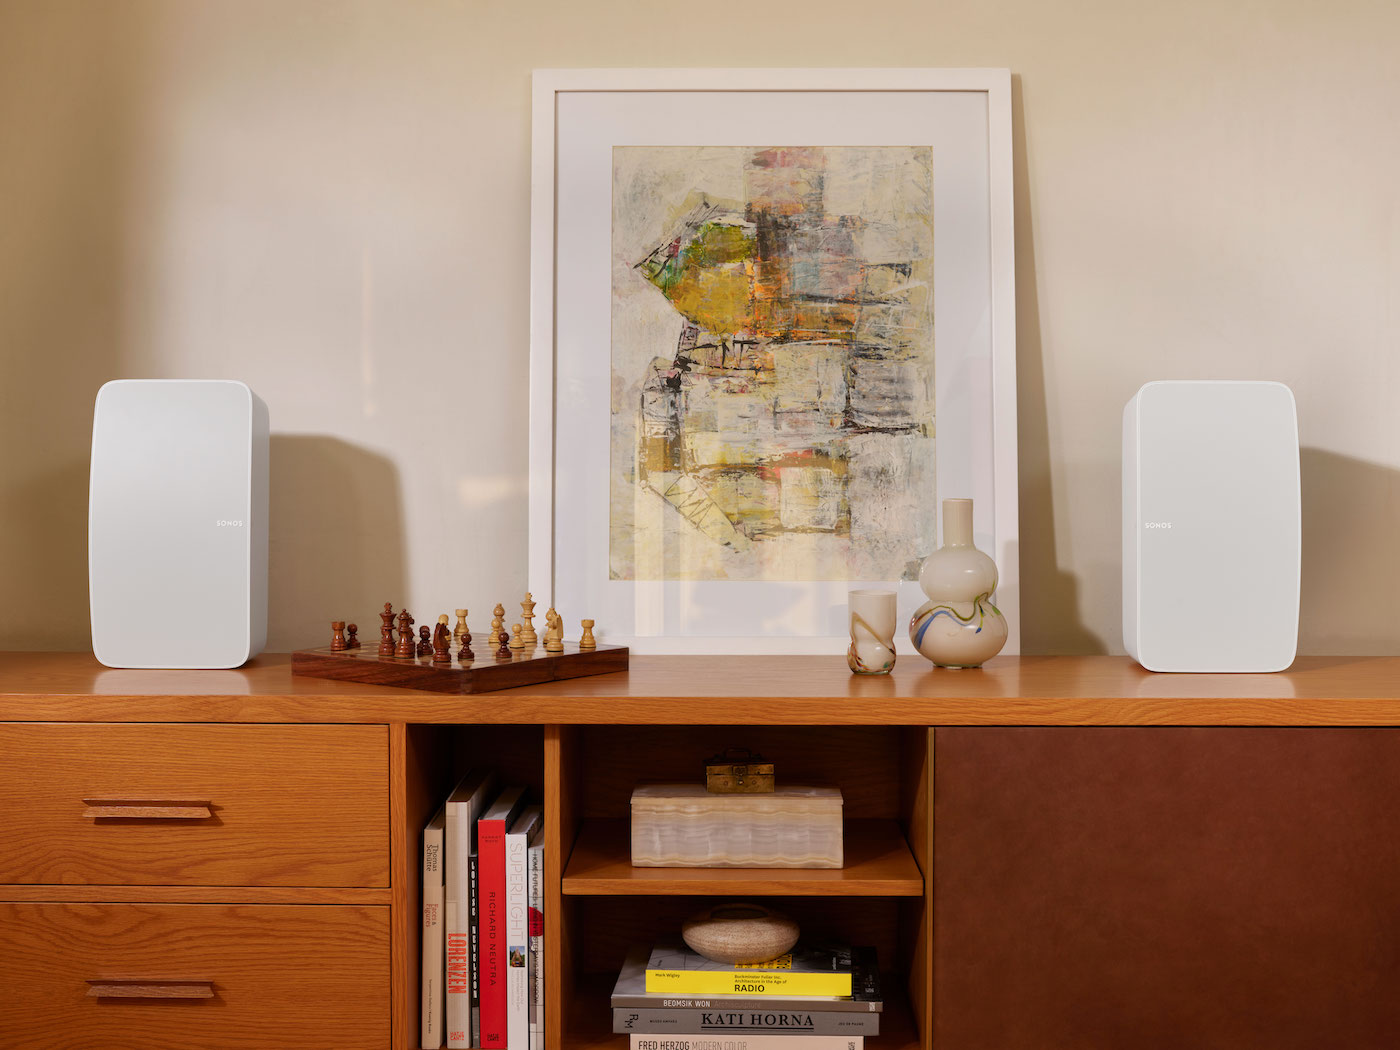 Sonos Arc è la smart soundbar a tutto tondo con Dolby Atmos per film, serie TV e musica